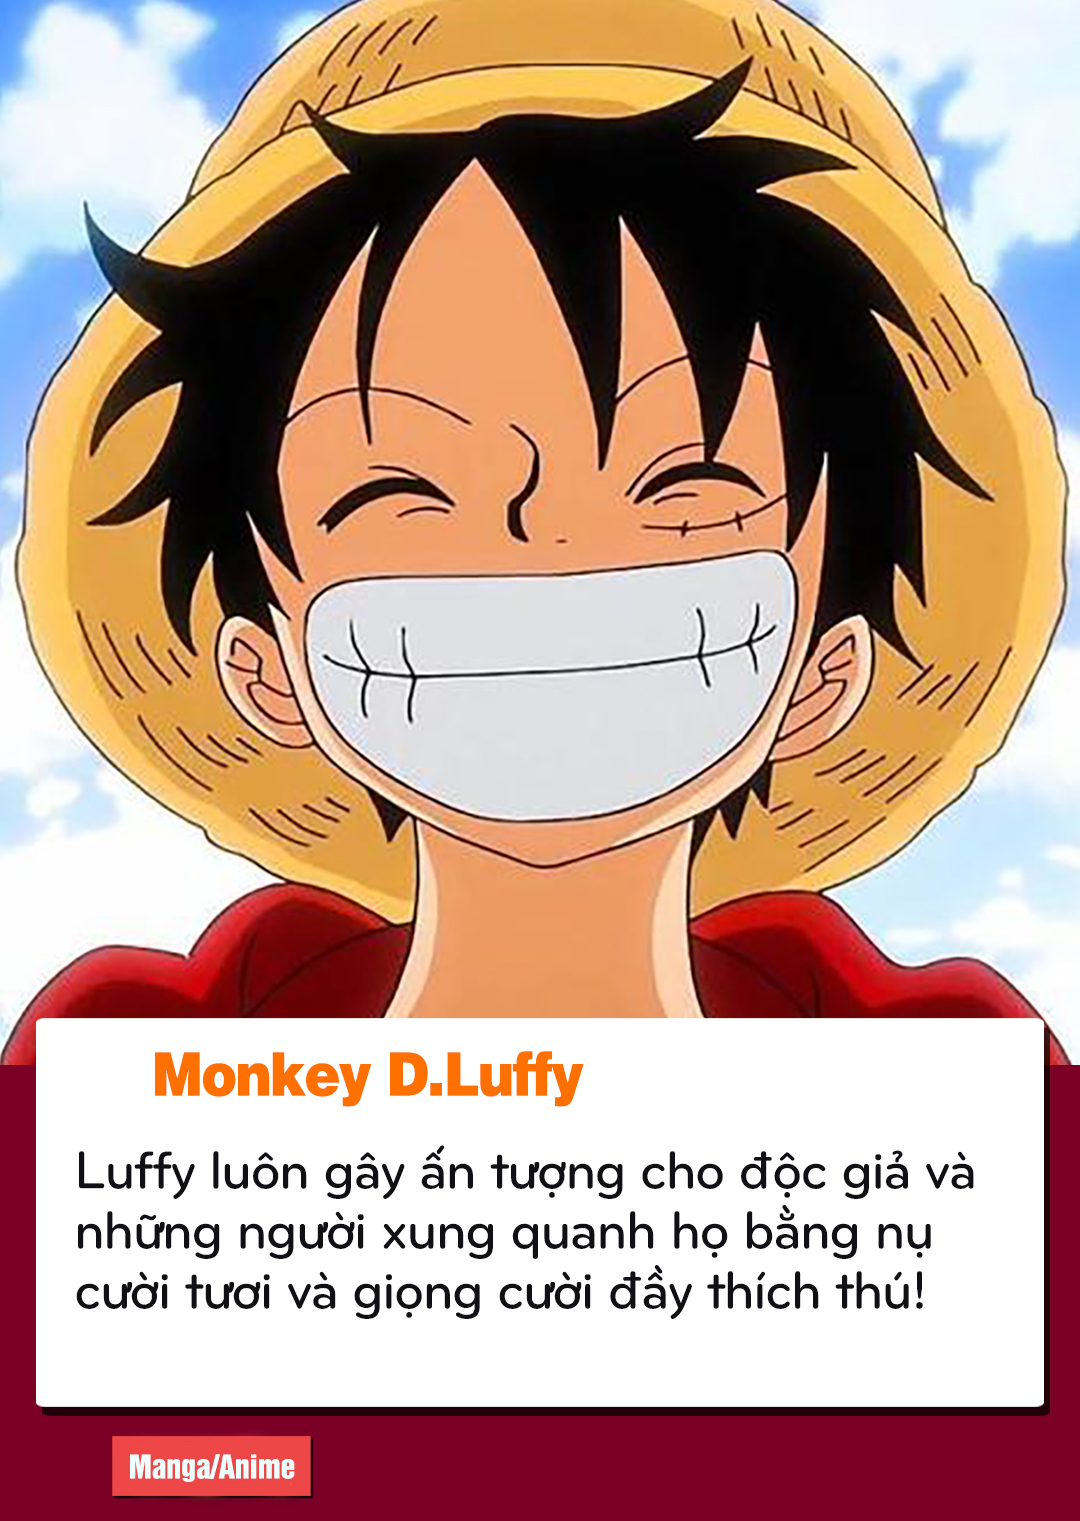 Hãy đến với hình ảnh Luffy, nhân vật huyền thoại trong One Piece, và chiêm ngưỡng tài năng, sức mạnh của anh khi chinh phục biển cả và đánh bại kẻ ác. Nếu bạn là fan của anime/manga, bạn không thể bỏ lỡ những hình ảnh đầy đam mê về Luffy.